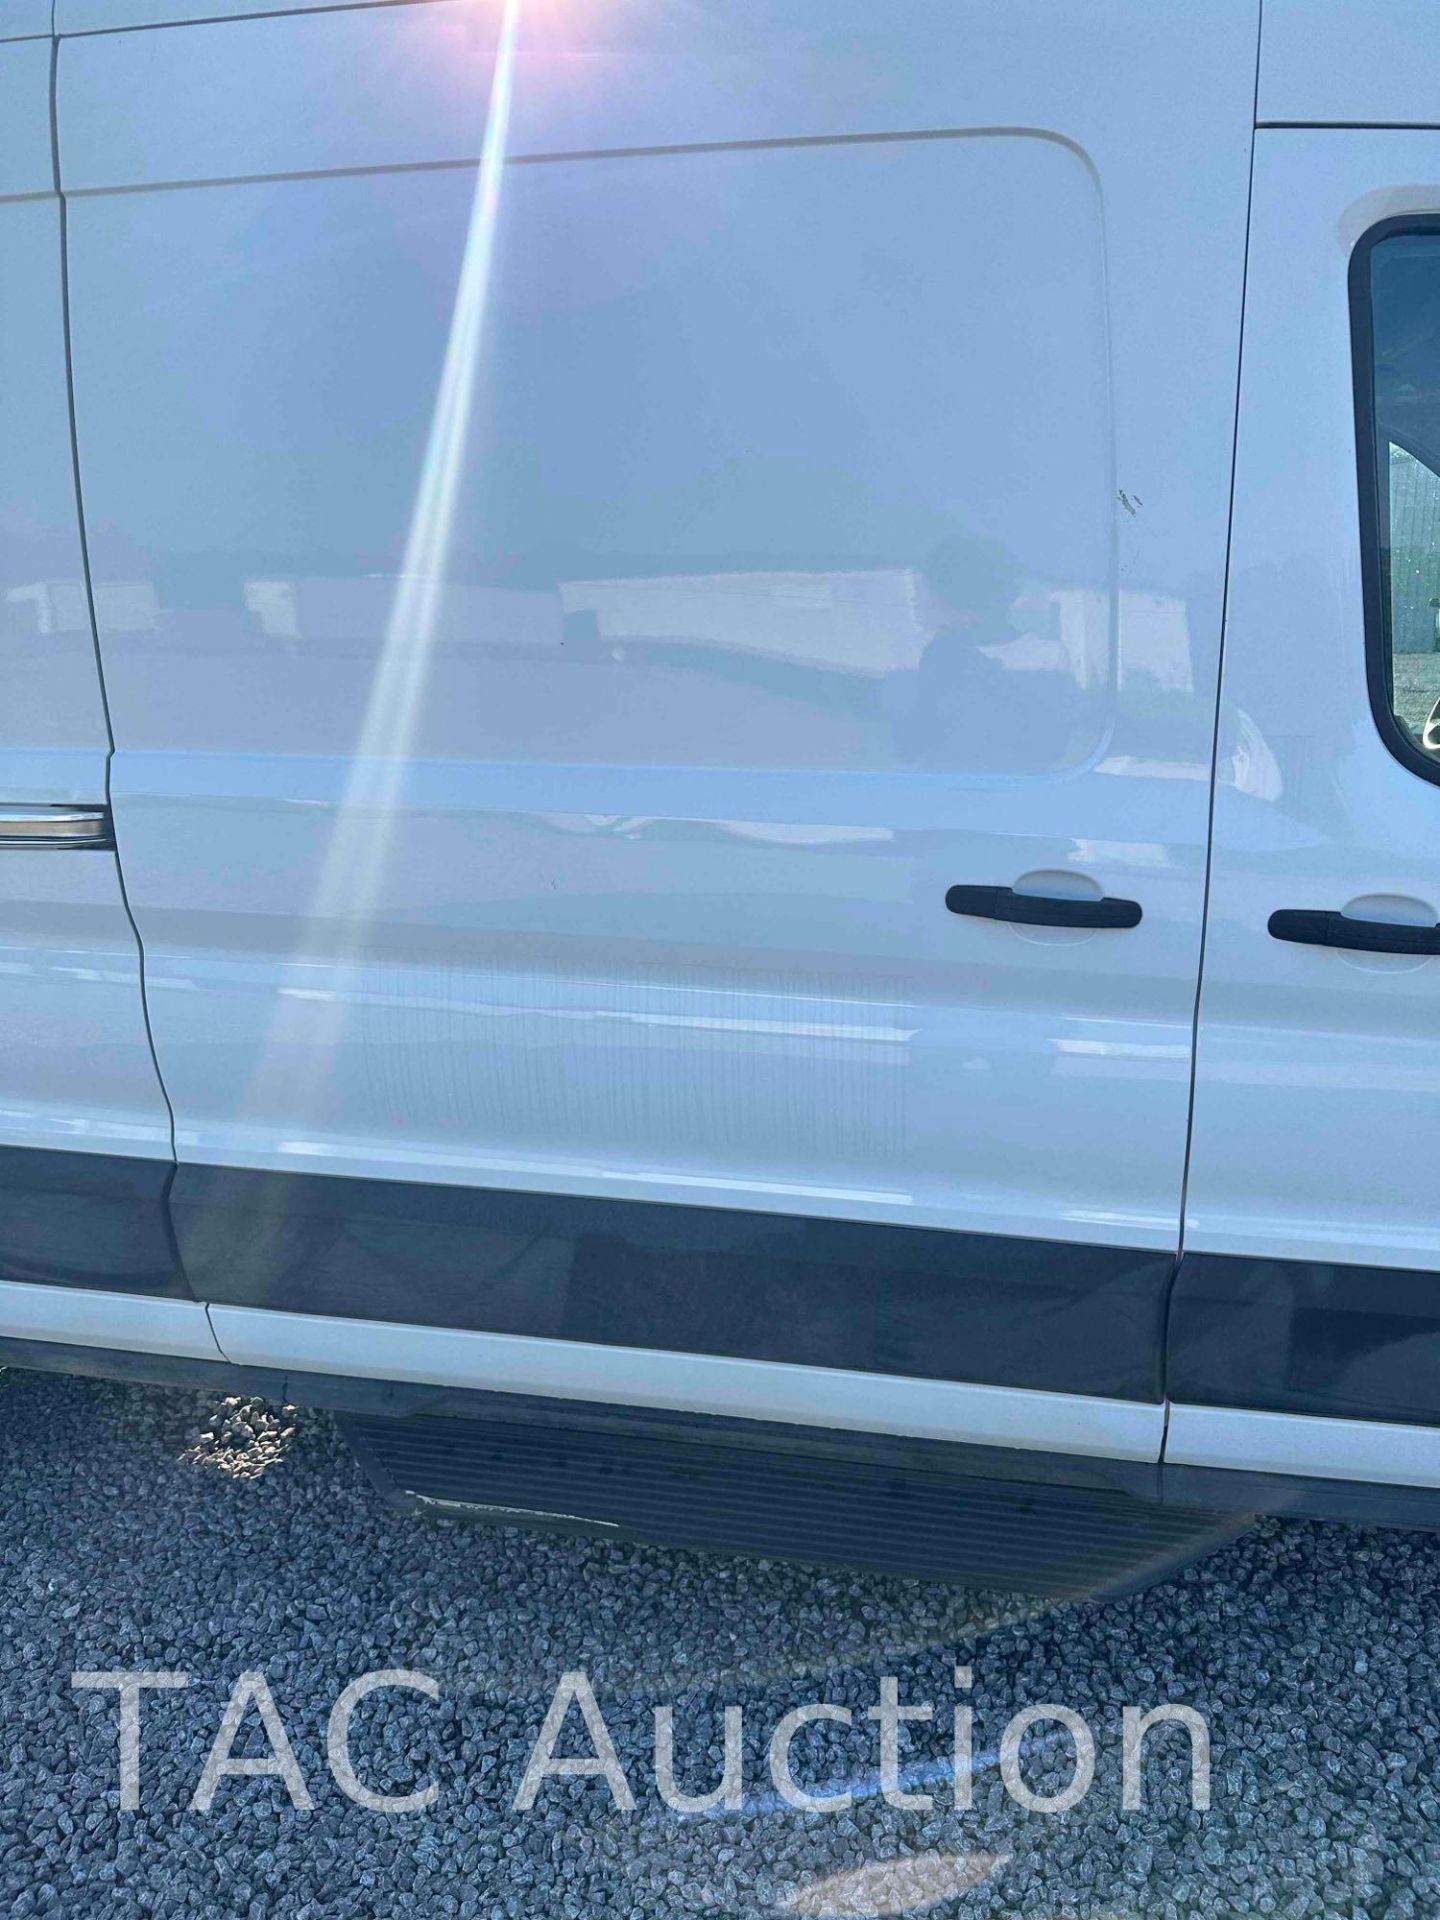 2019 Ford Transit 150 Cargo Van - Image 8 of 25